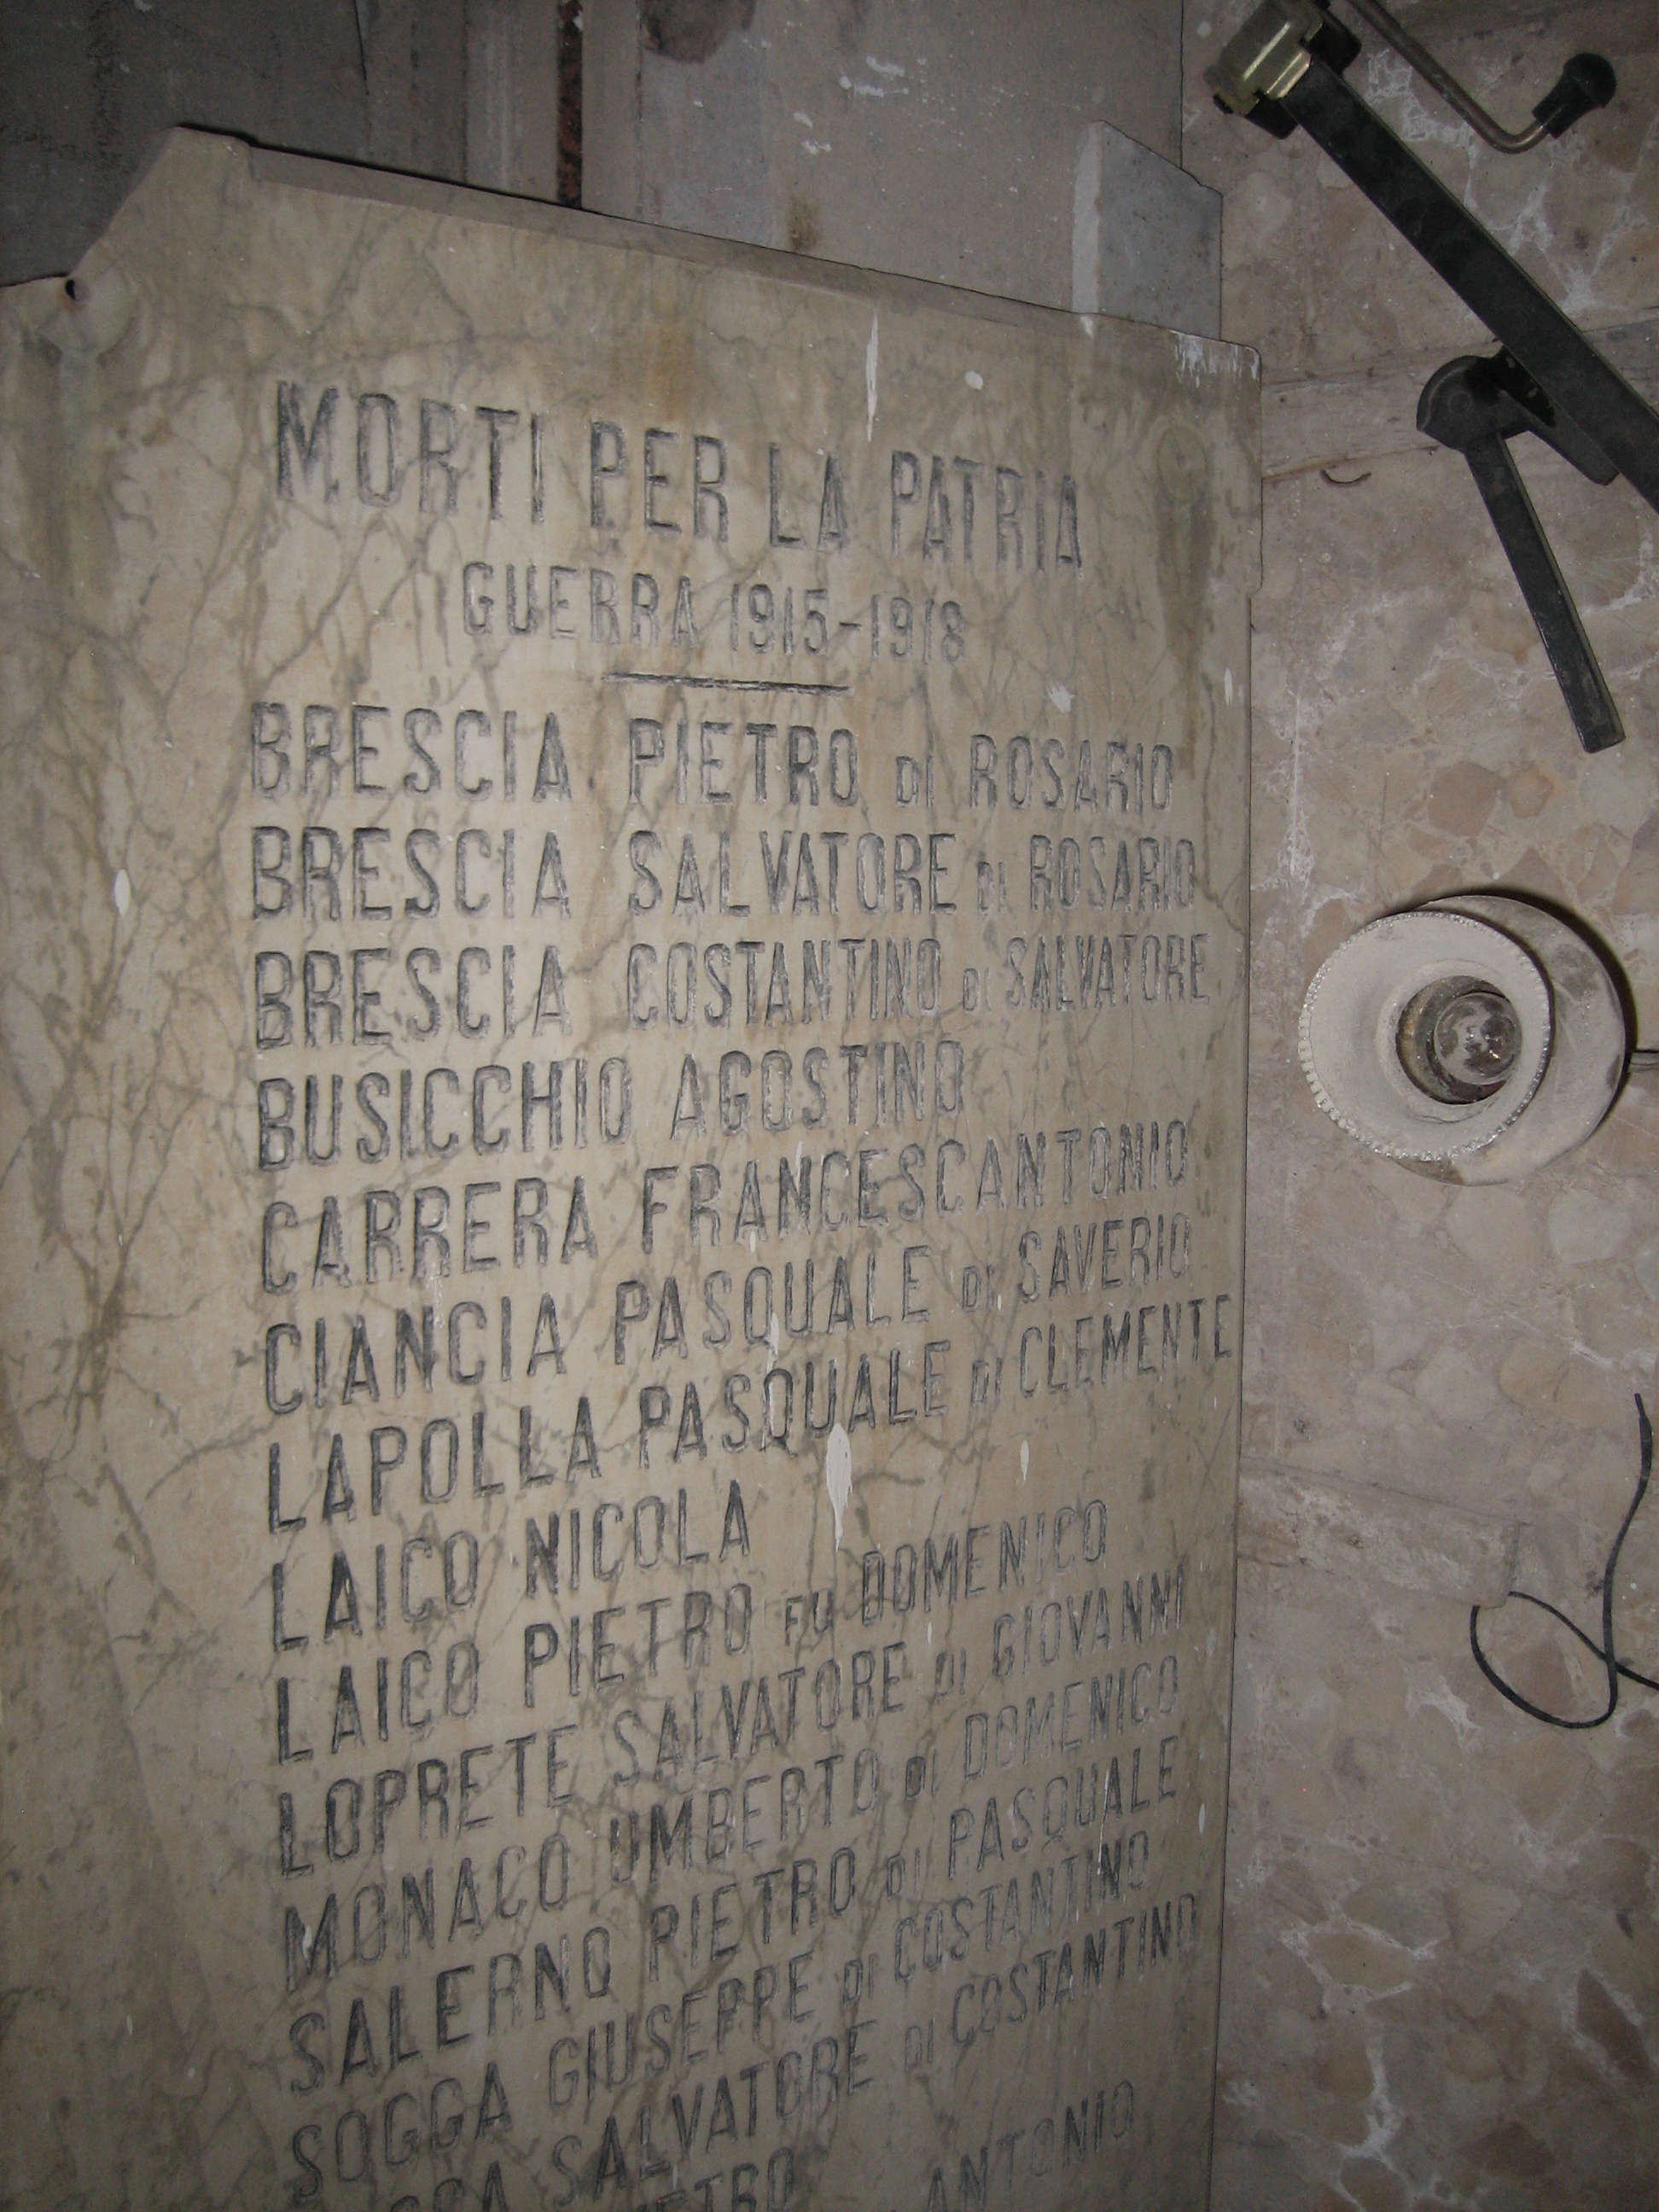 lapide commemorativa ai caduti - ambito lucano (primo quarto XX sec)